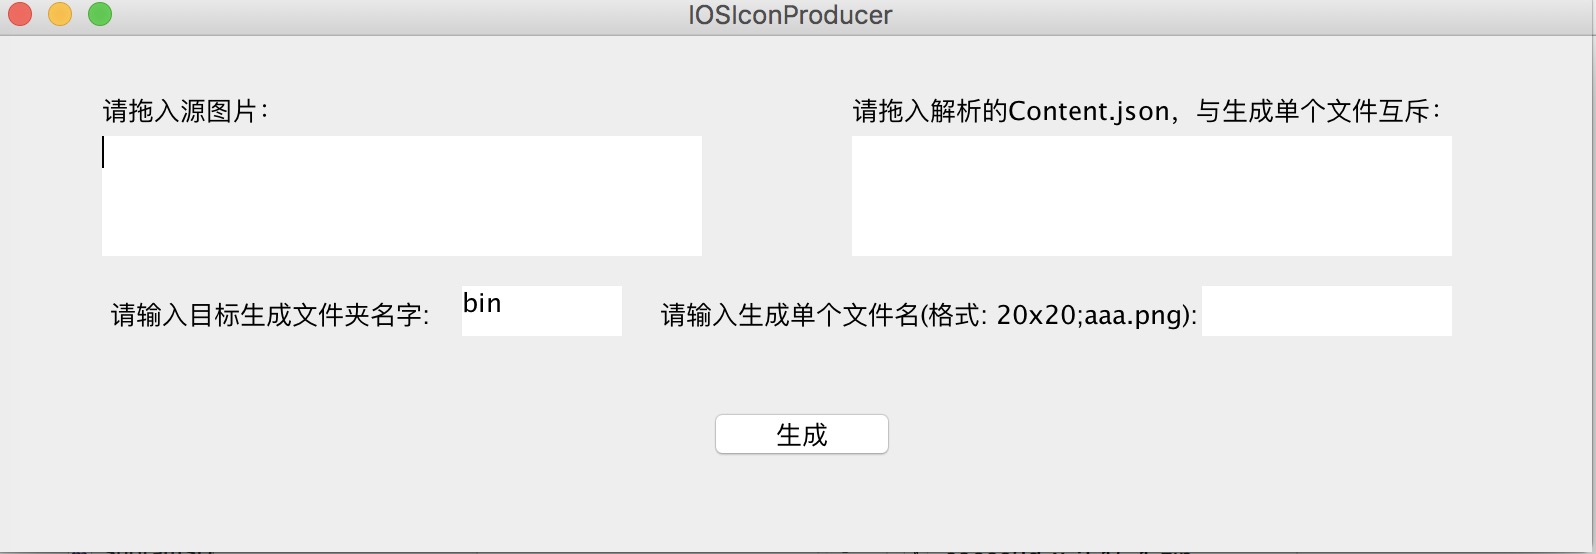 一键生成IOS App Icon工具第1张